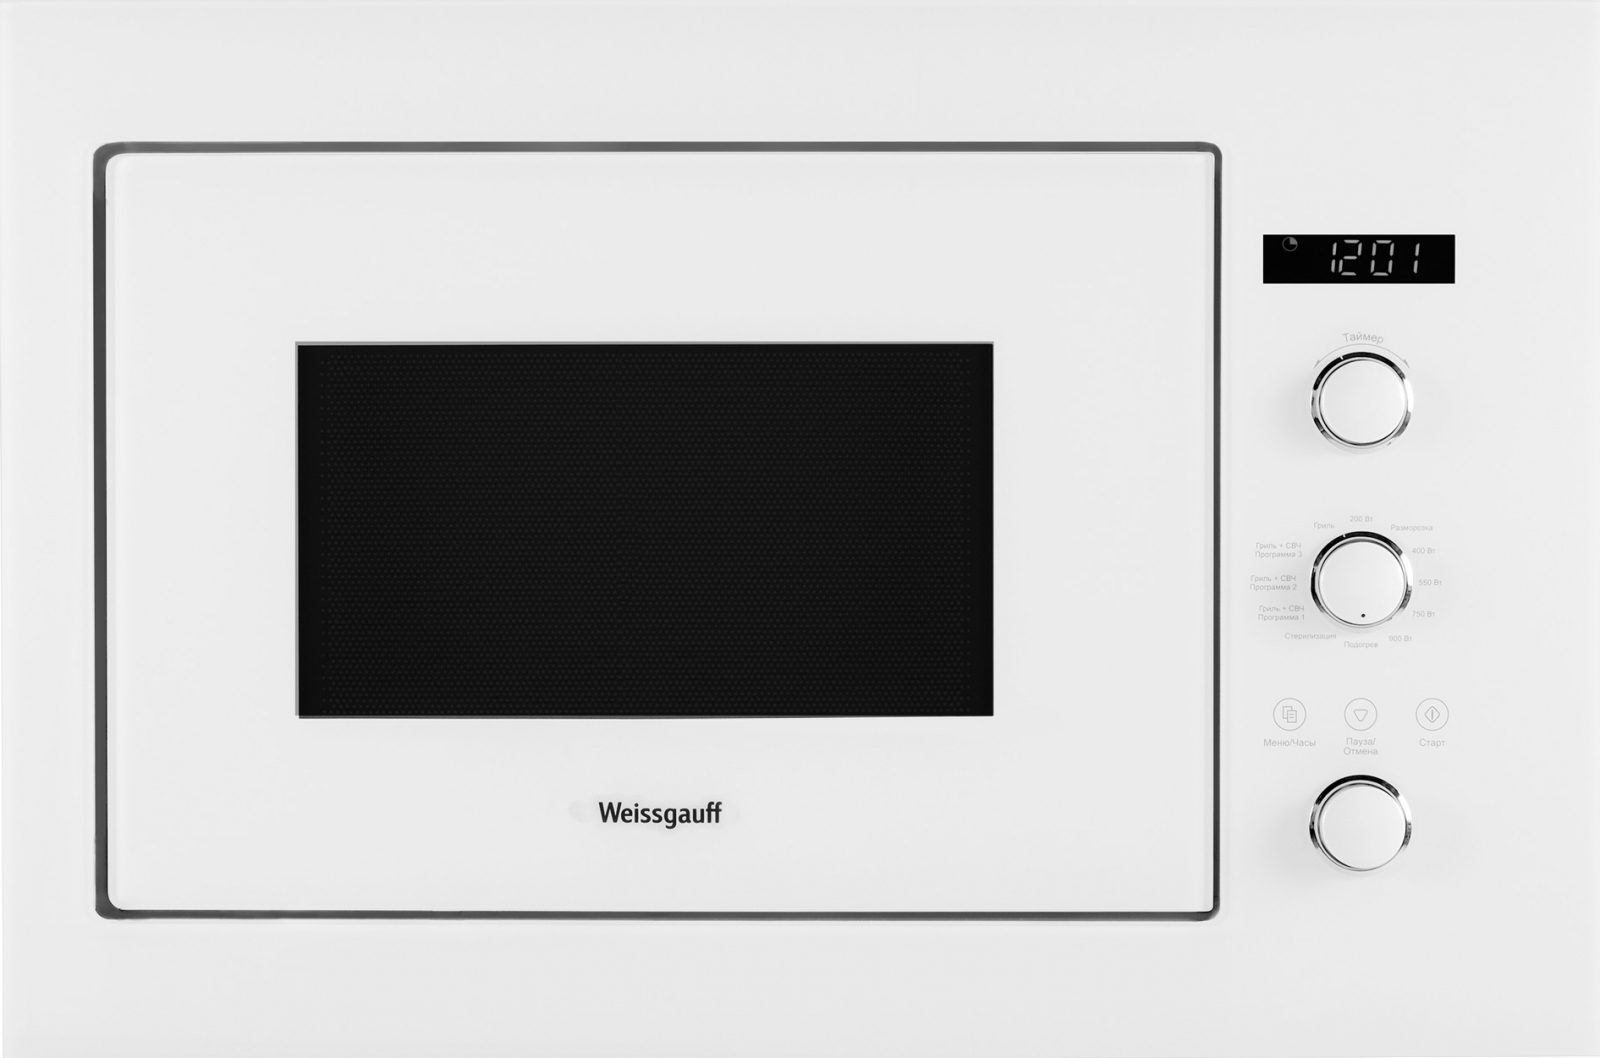 Встраиваемая микроволновая печь Weissgauff HMT-252 White встраиваемая микроволновая печь weissgauff hmt 202 white